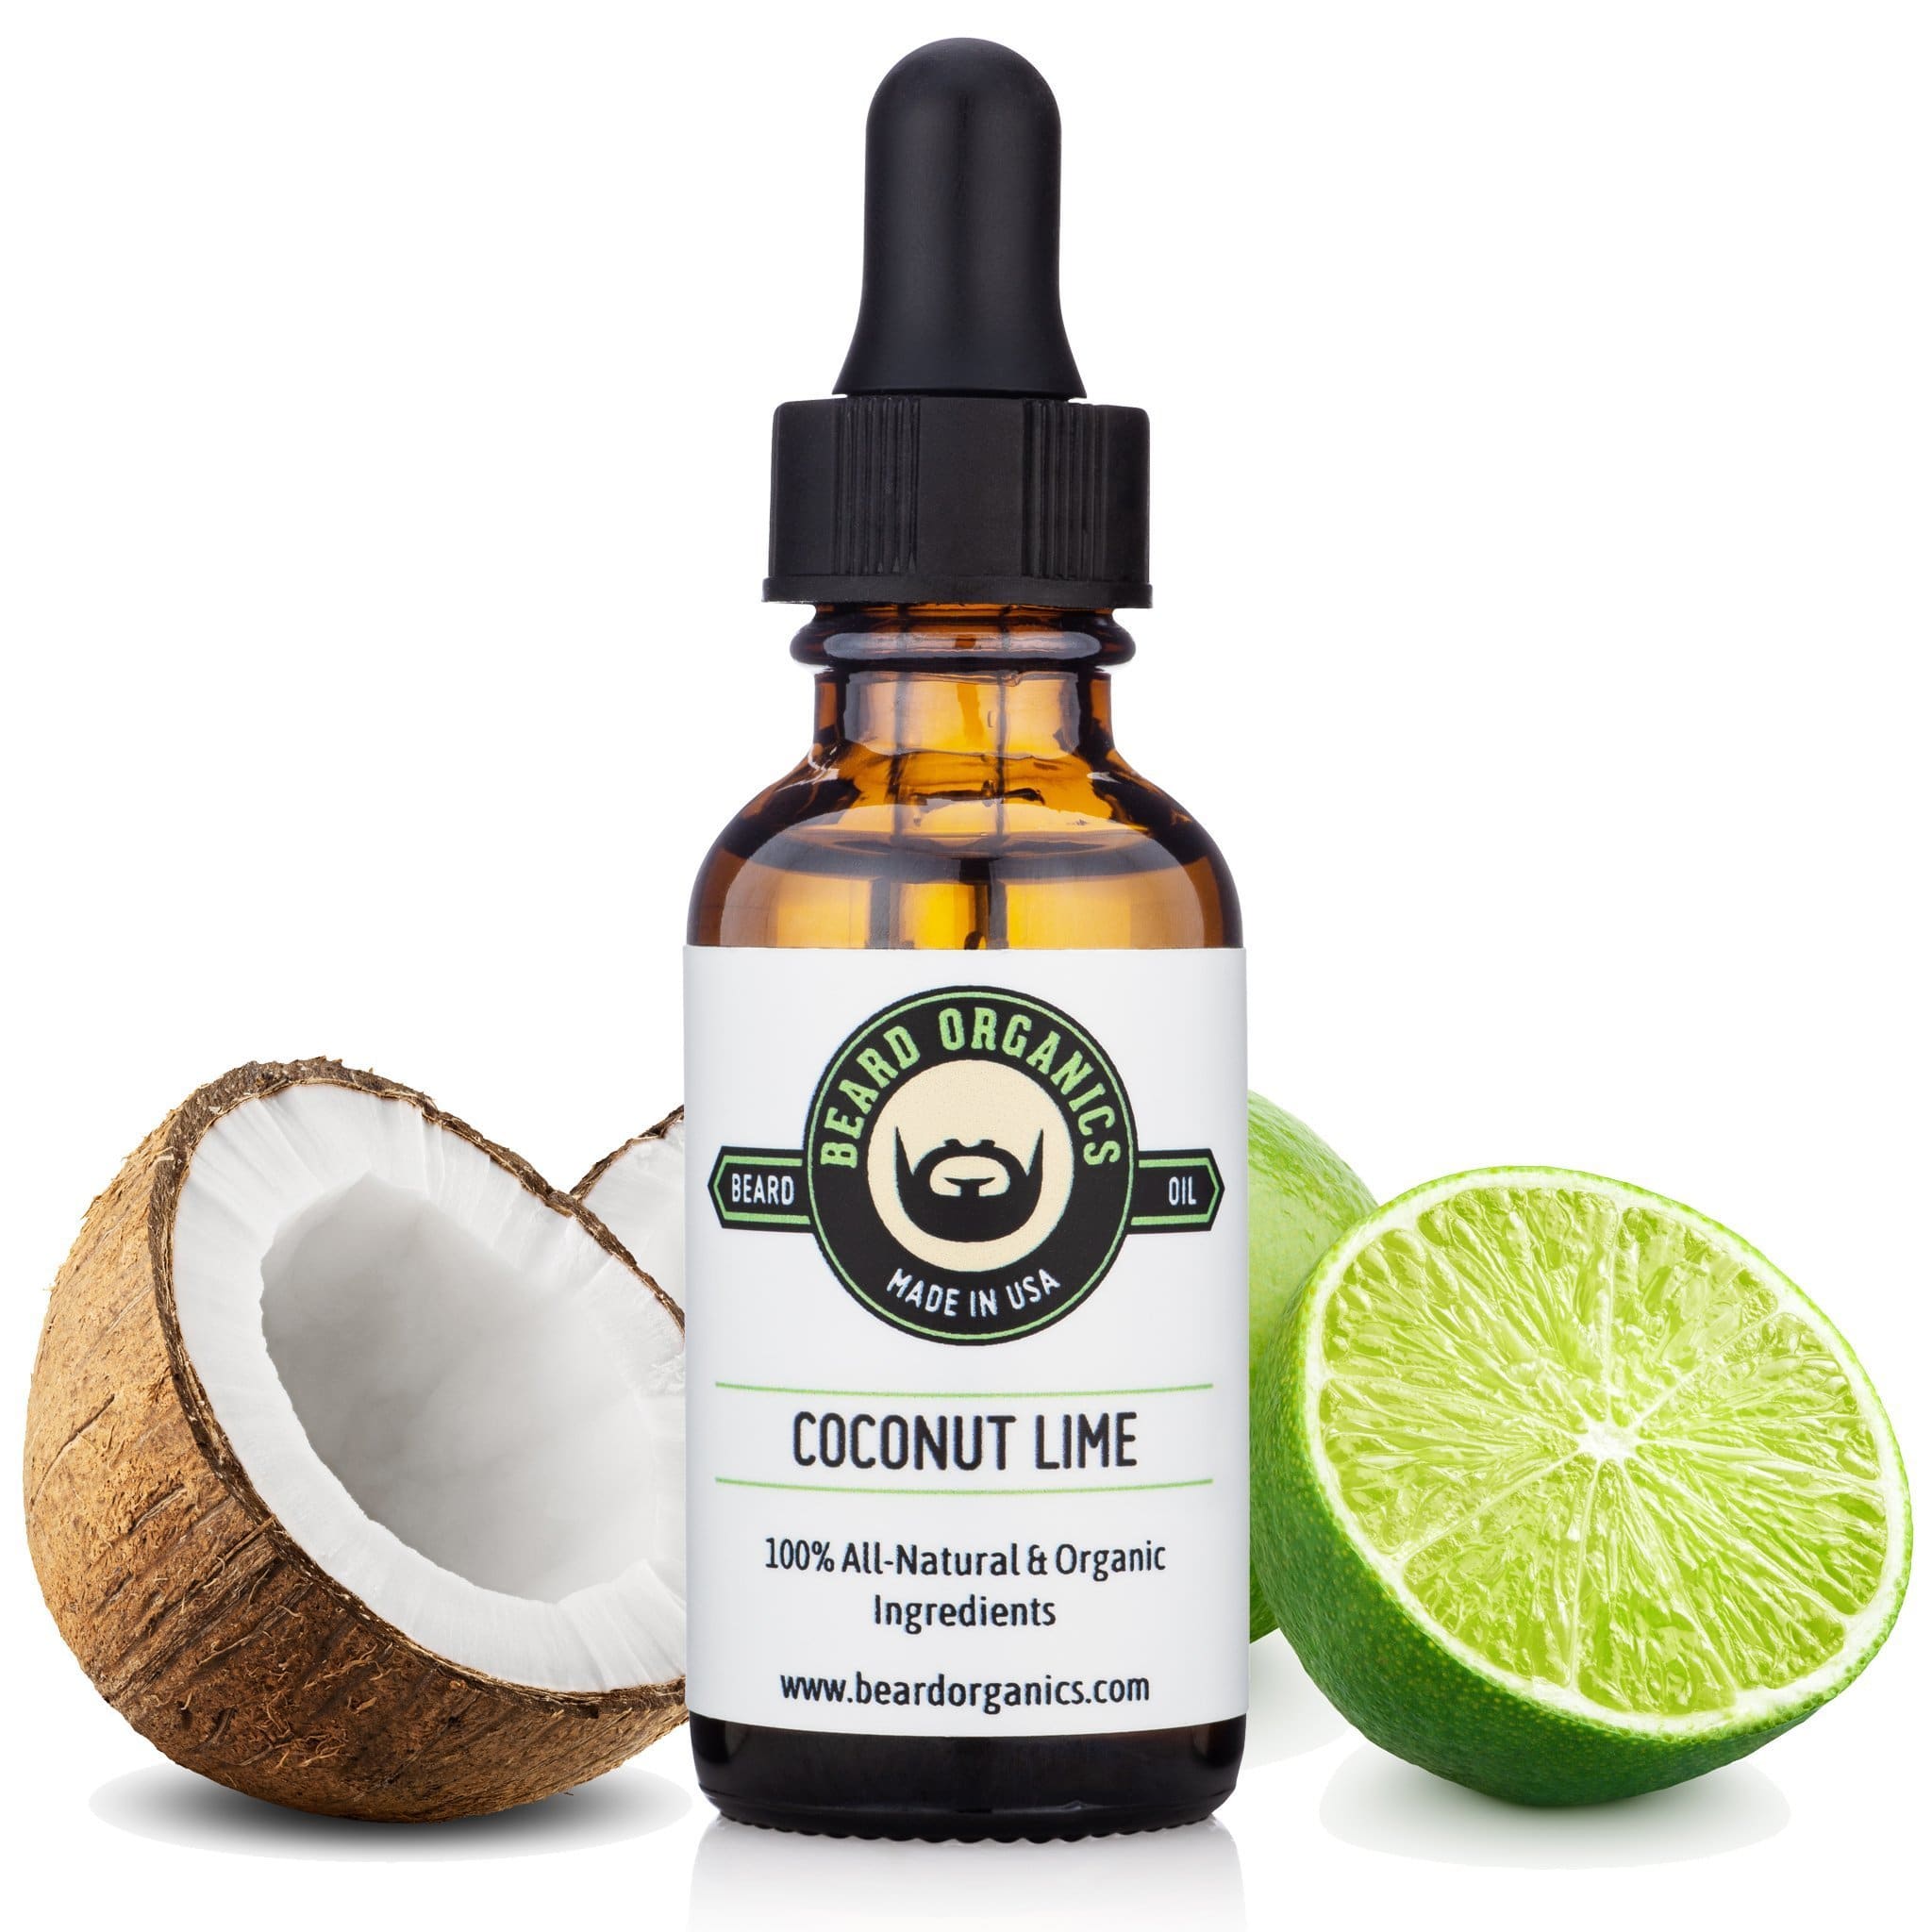 Coconut Lime Beard Oil by Beard Organics